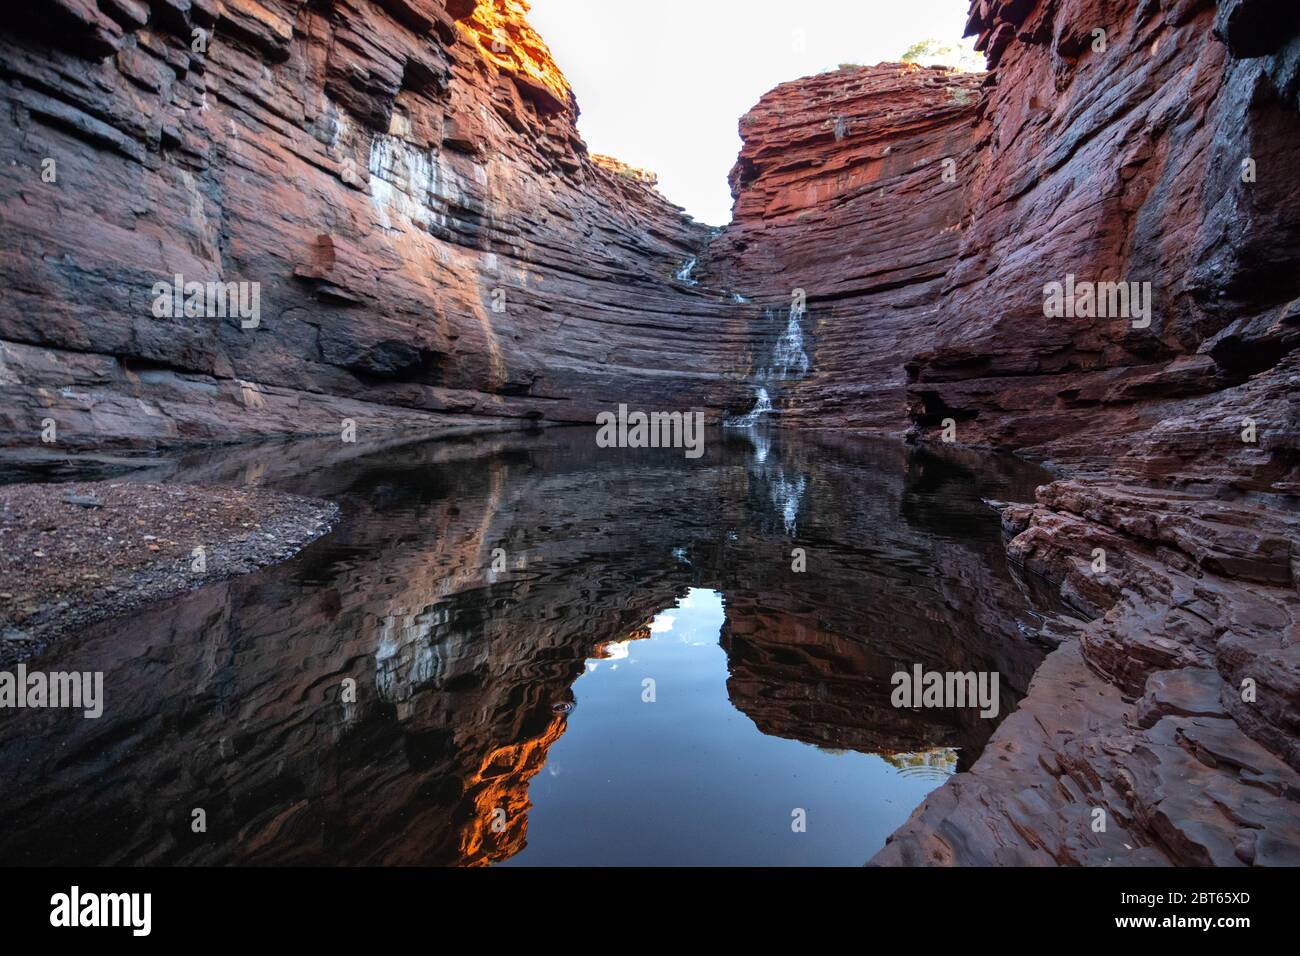 Western Australian landscape Stock Photo